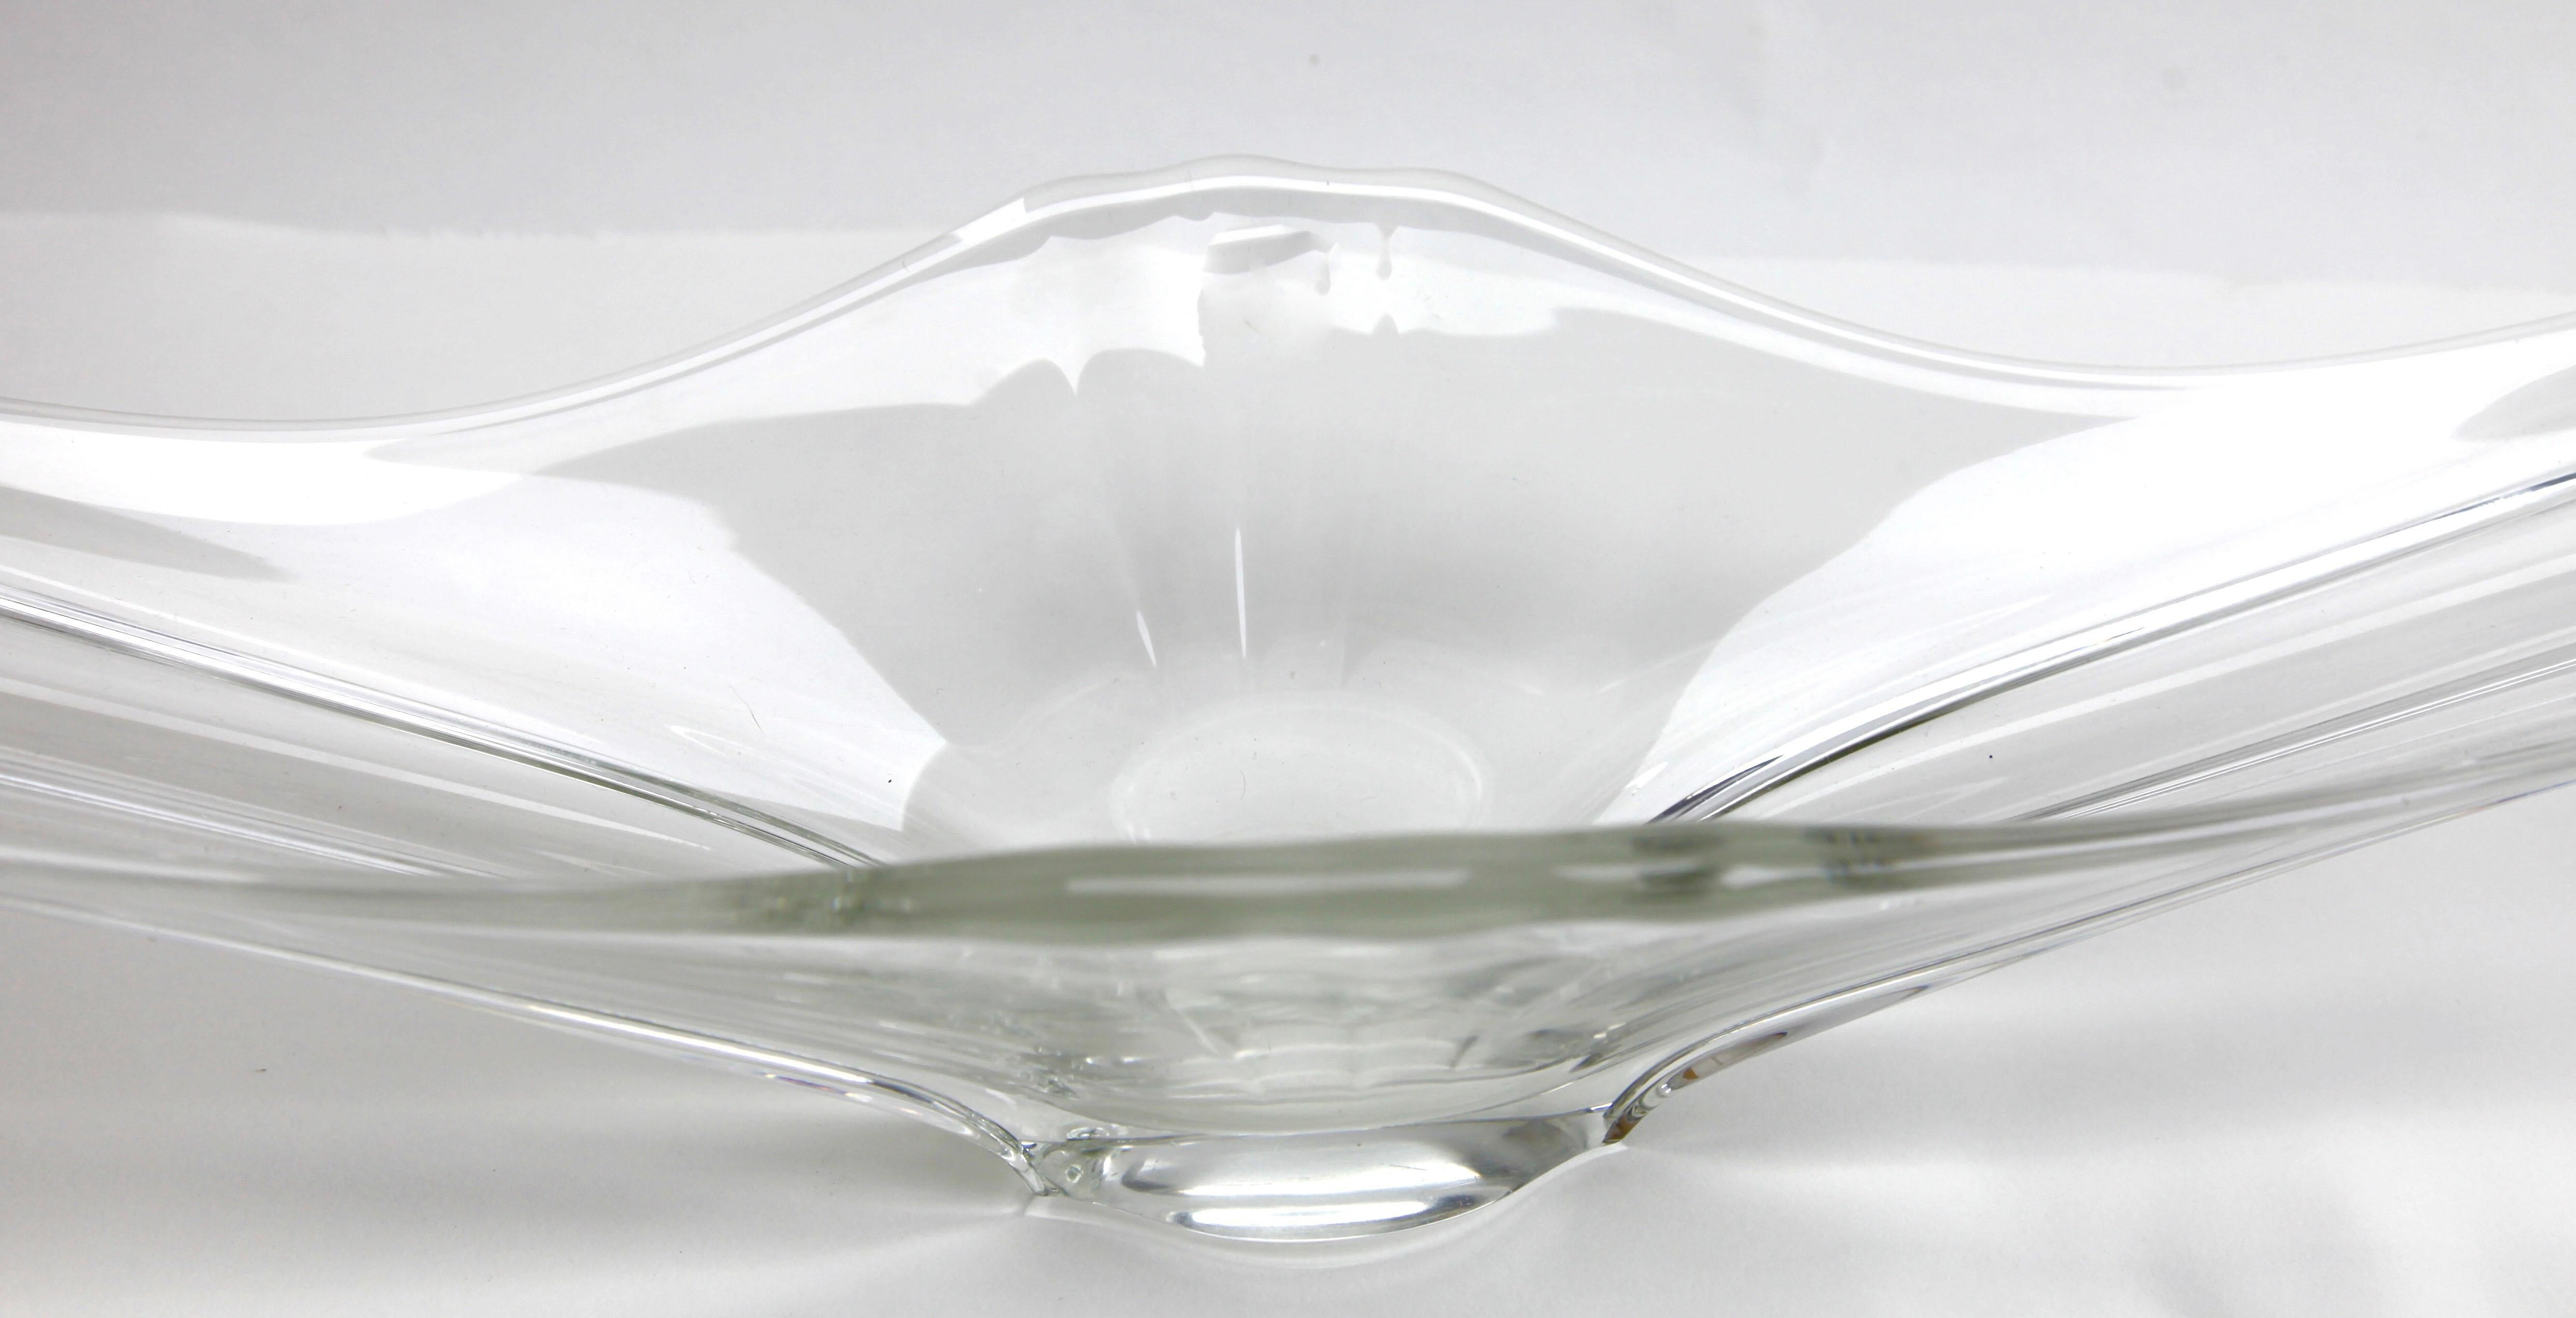 Vintage Val Saint Lambert Stretch Obstschale oder Schale in klarem Kristall. Der Artikel kann als Tischdekoration oder auf einem Kaminsims verwendet werden.
Es hat zwei große, gestreckte, gerippte 